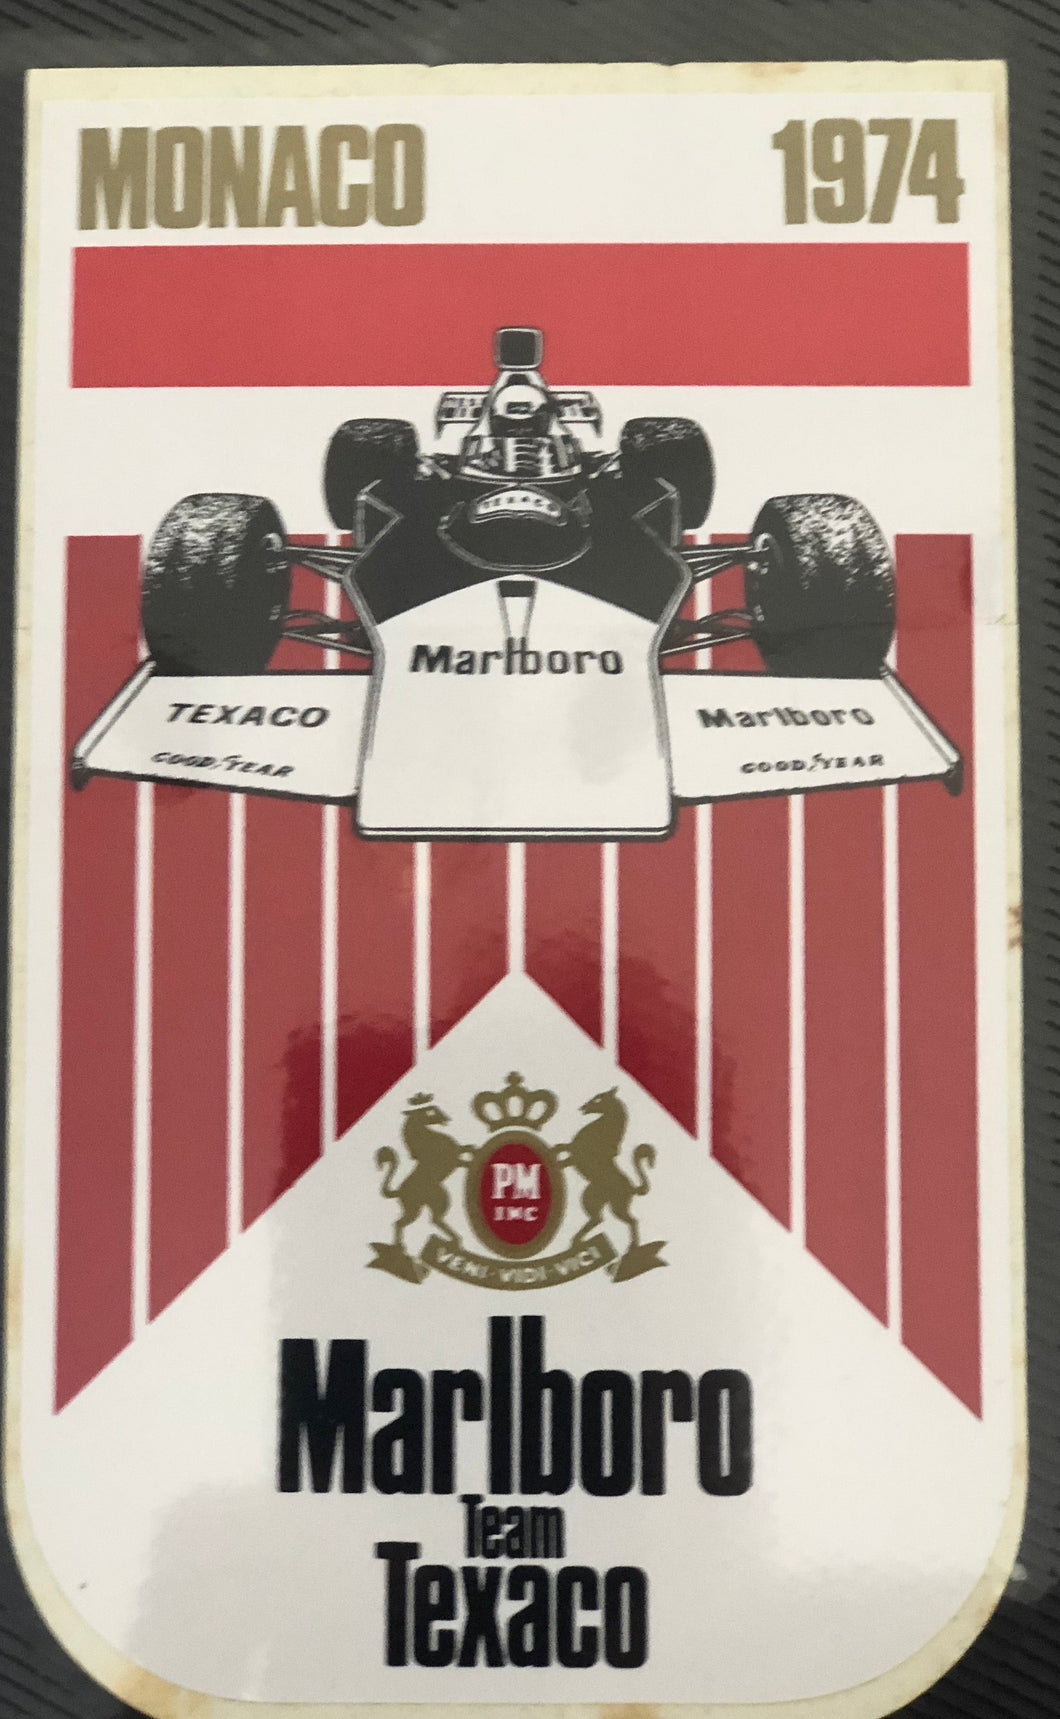 Marlboro team Texaco - Monaco 1974